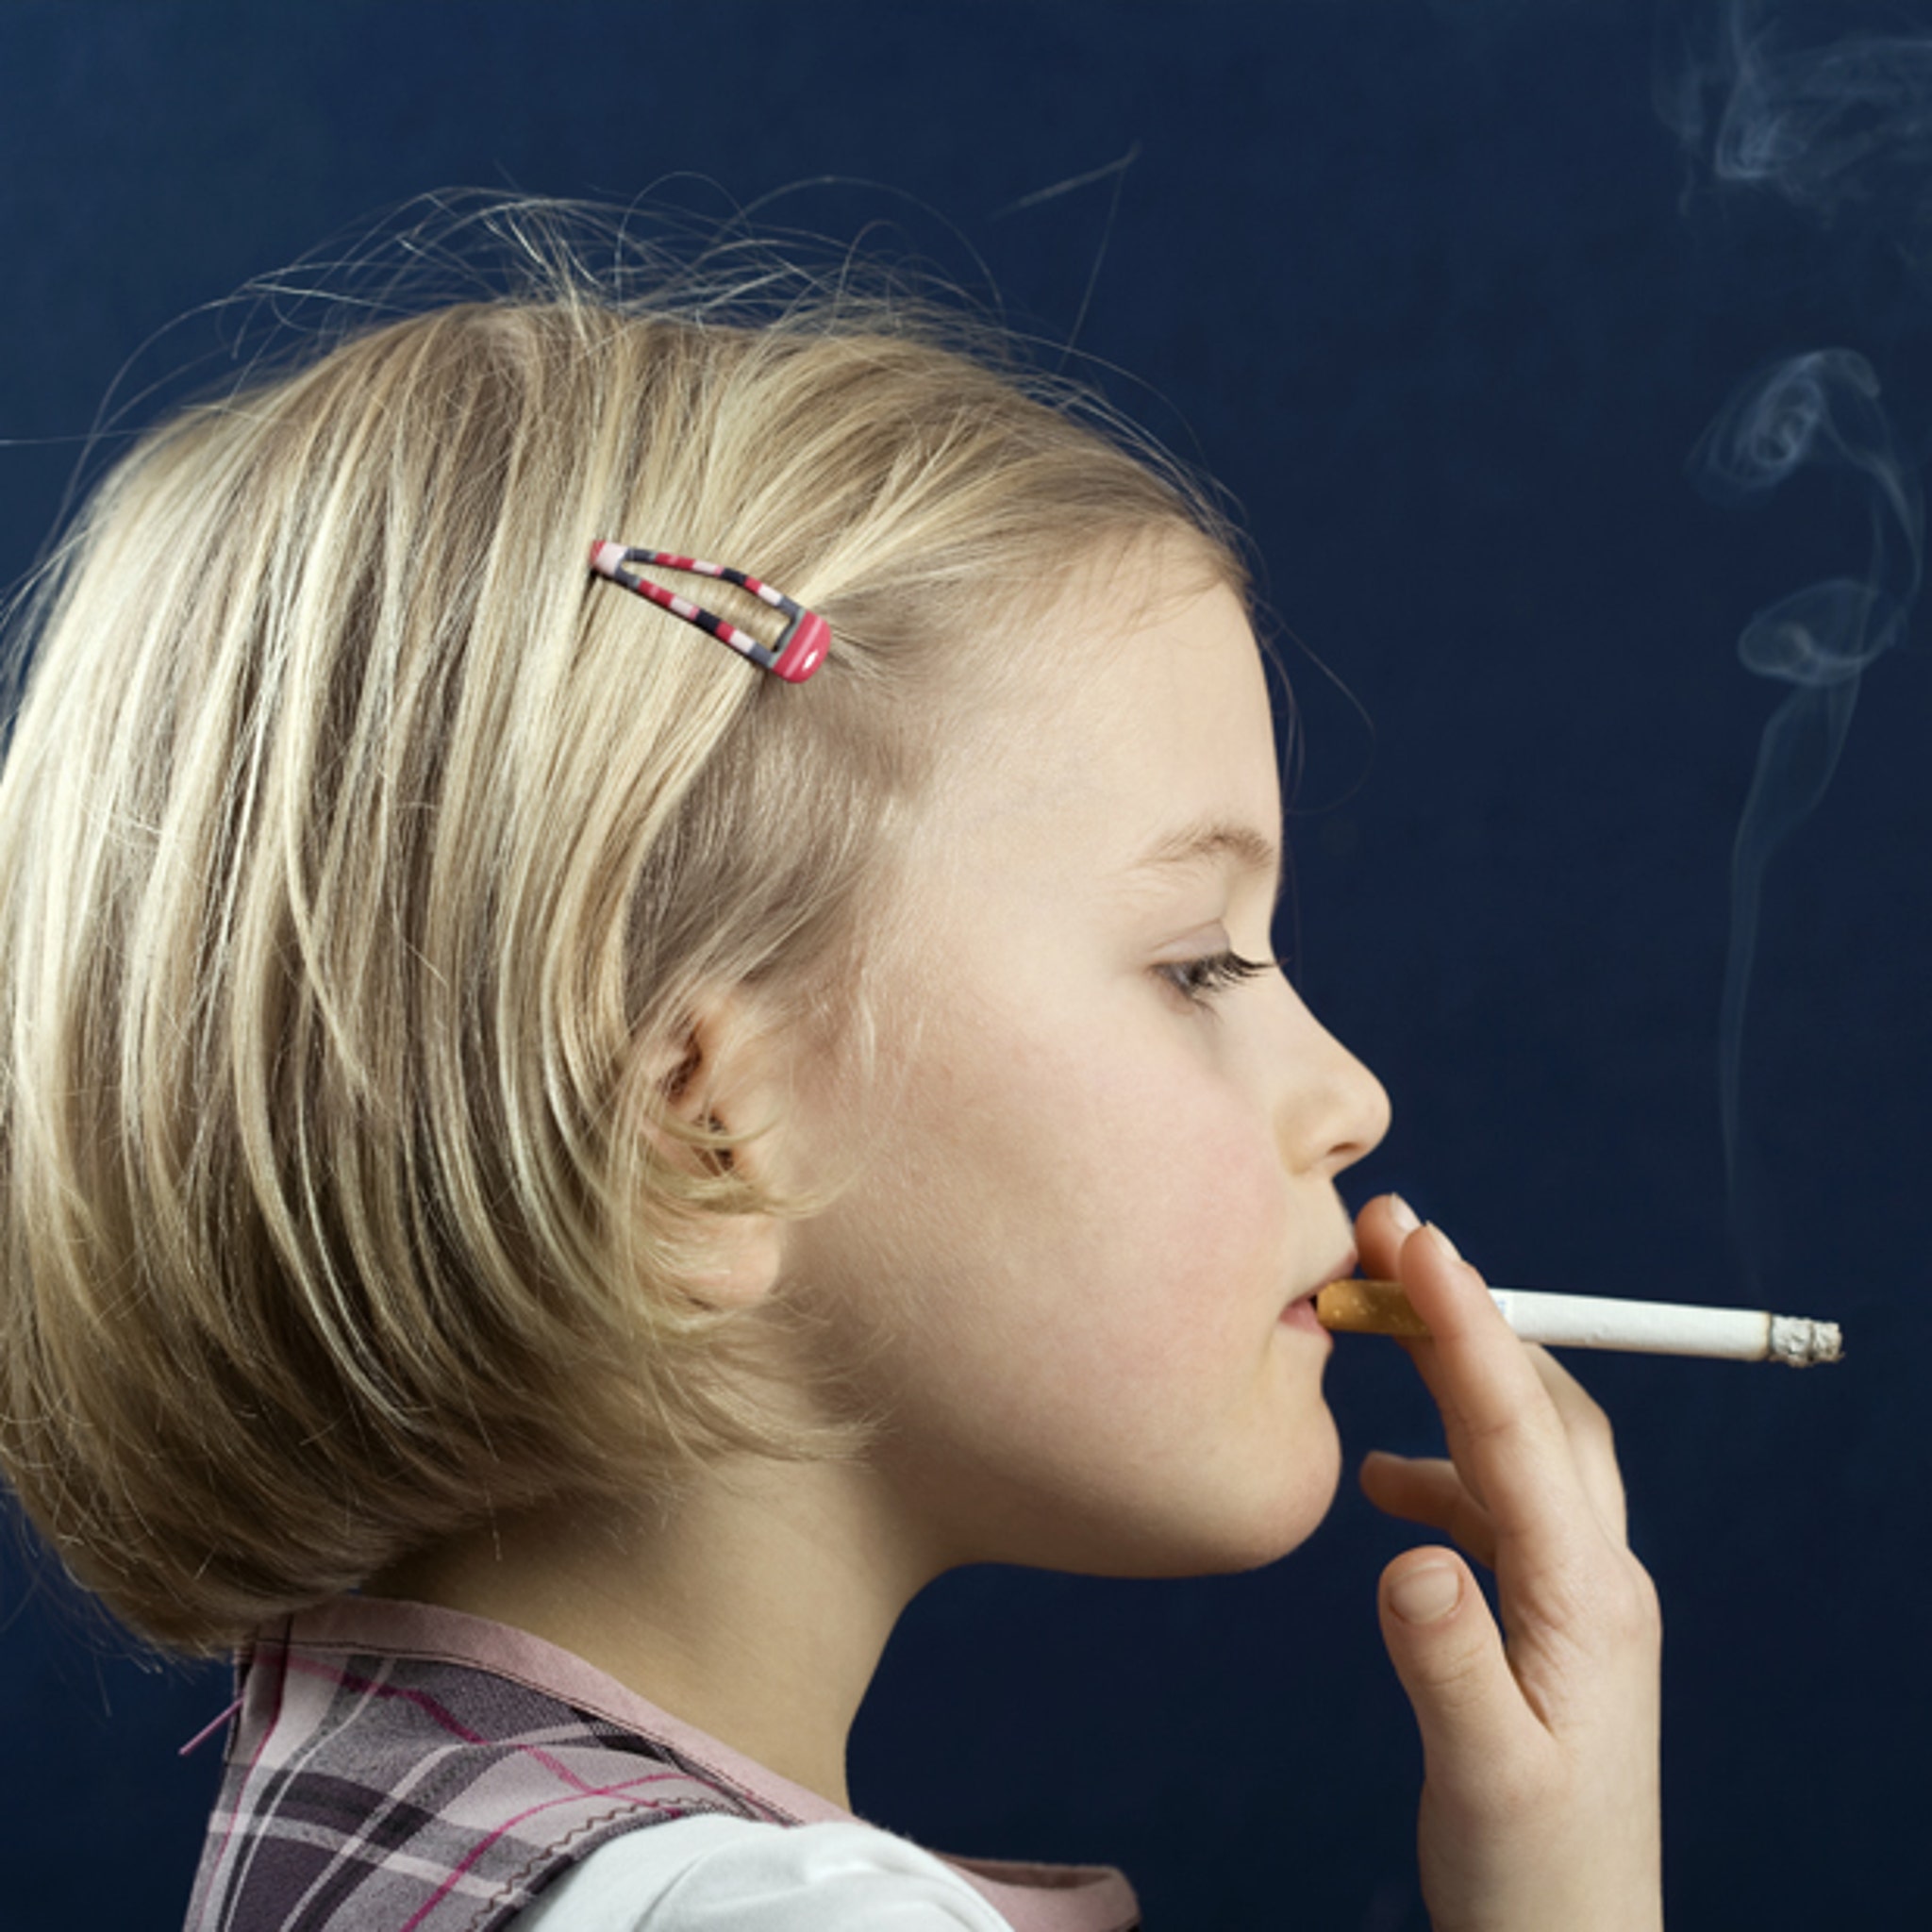 Tonen Dank u voor uw hulp lekkage New Zealand To Ban Kids From Smoking — For The Rest Of Their Lives